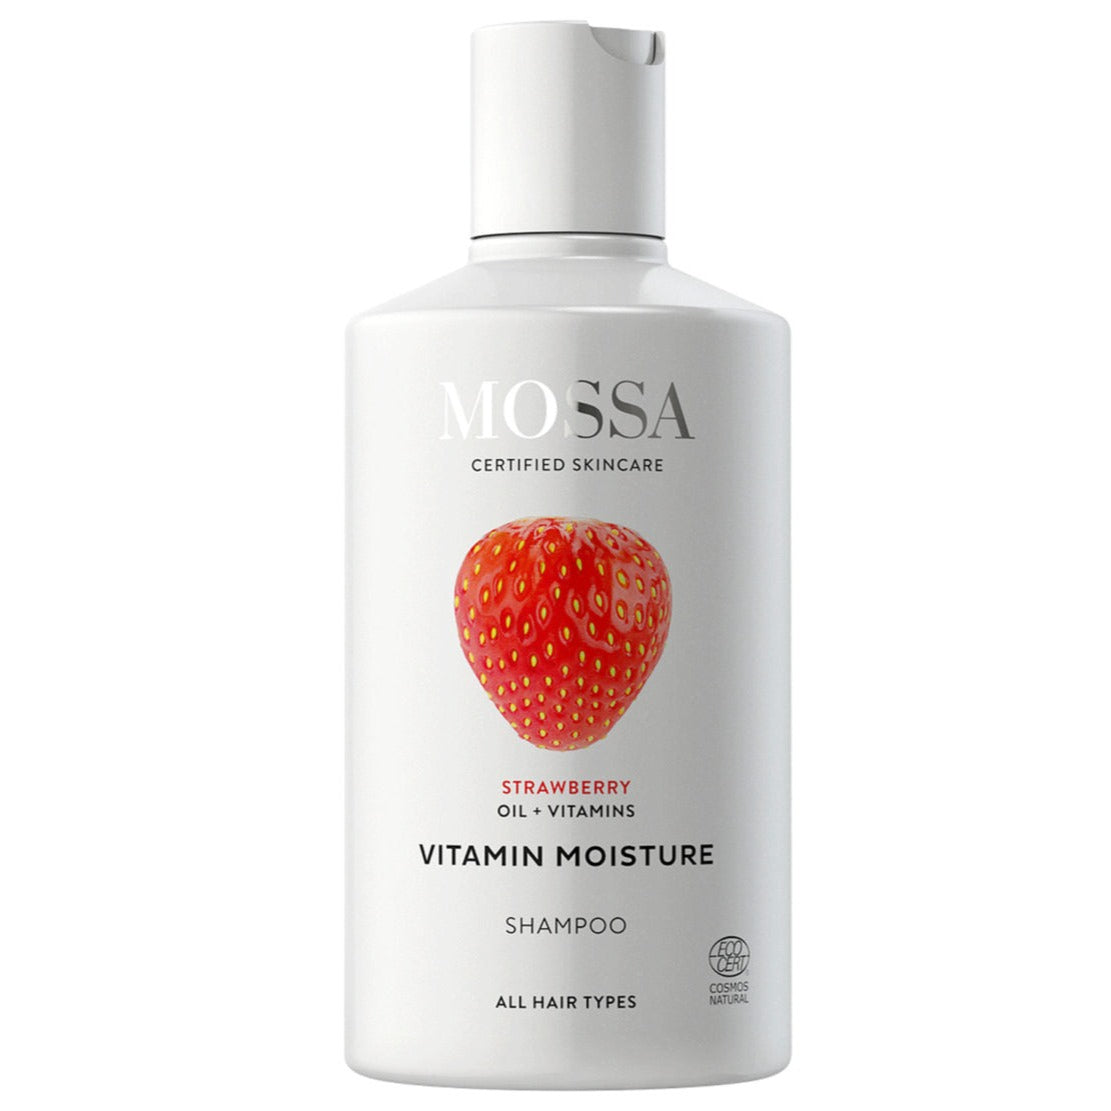 Mossa Vitamin Moisture Shampoo